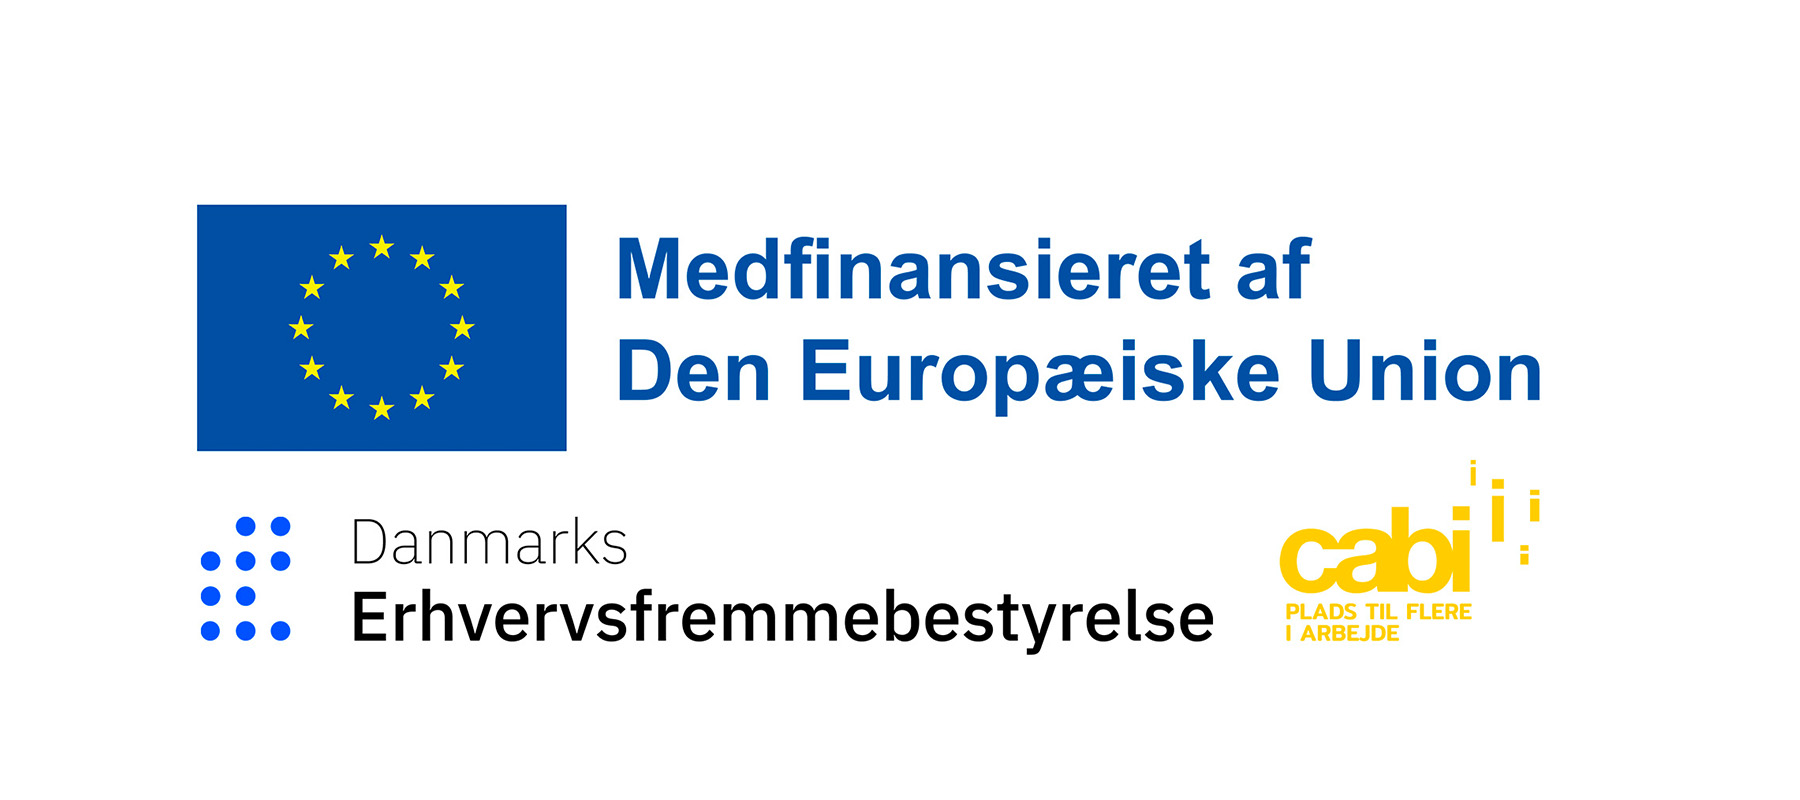 Logoer: Medfinansieret af Den Europæiske Union, Danmarks Erhvervsfremmebestyrelse og Cabi